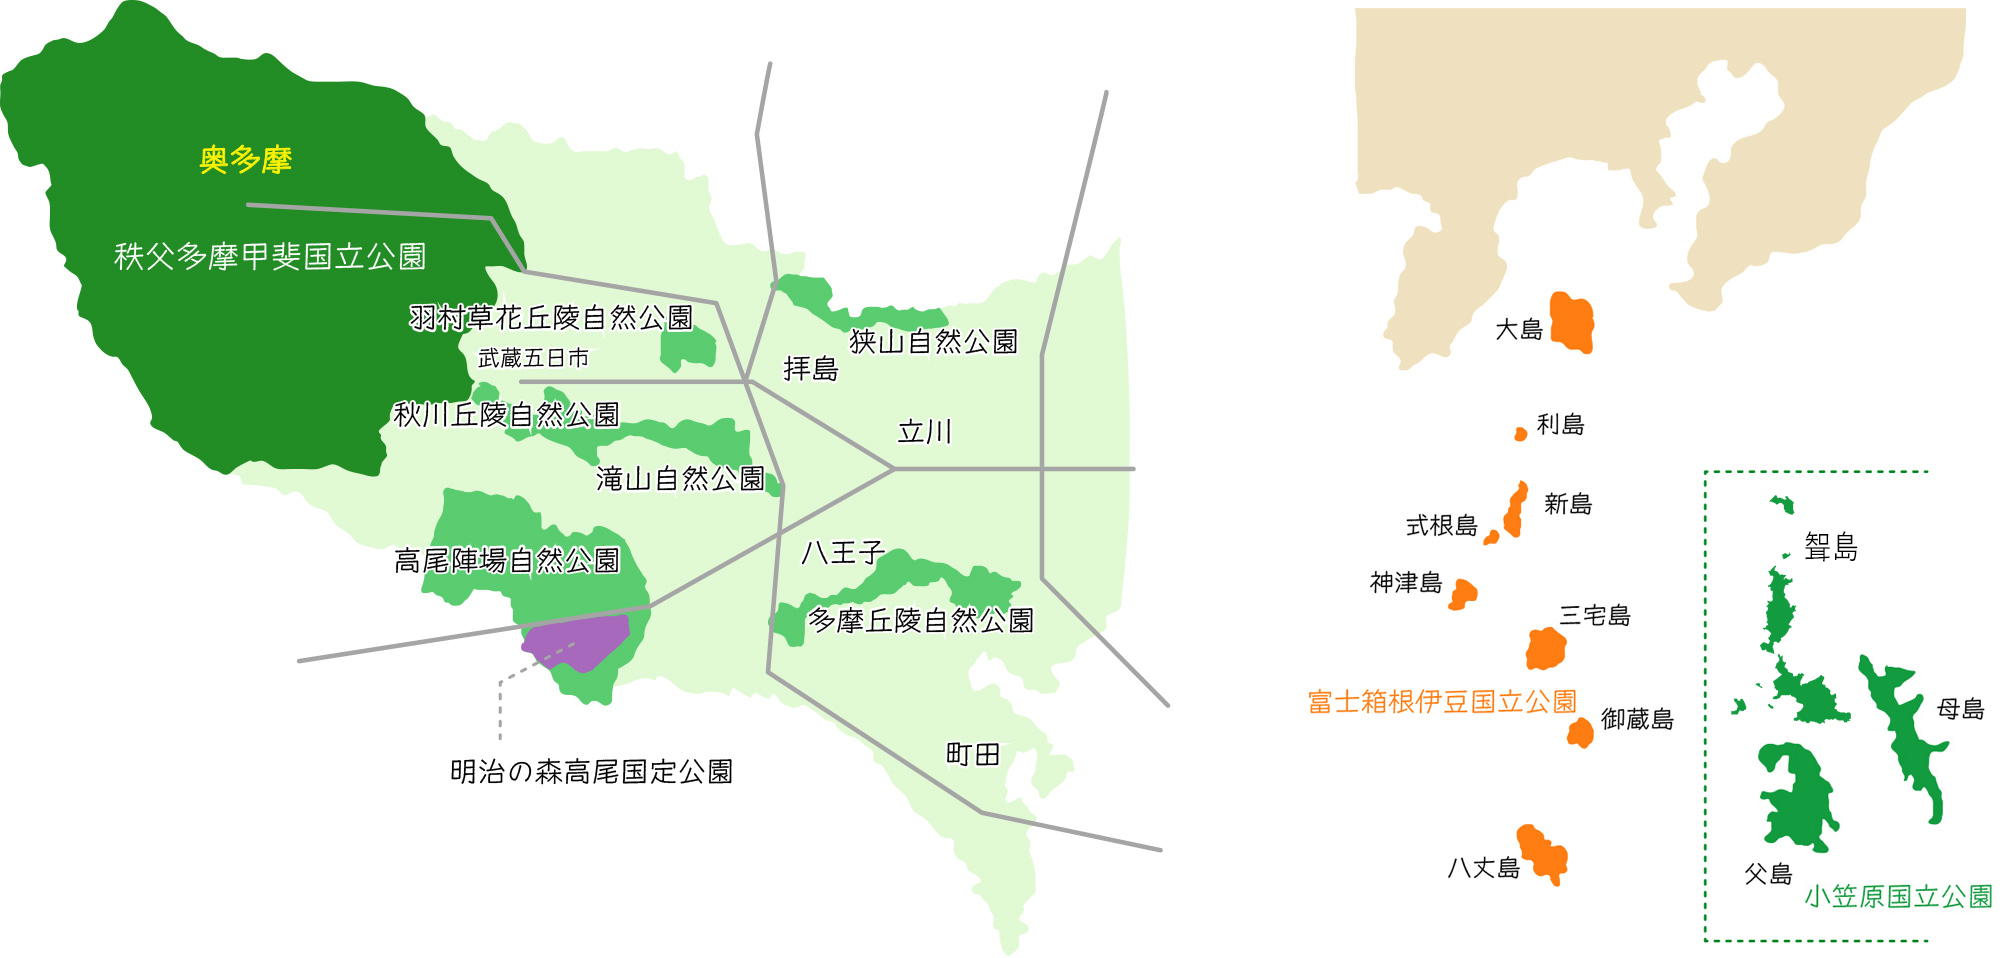 東京都の自然公園の場所が示された地図。